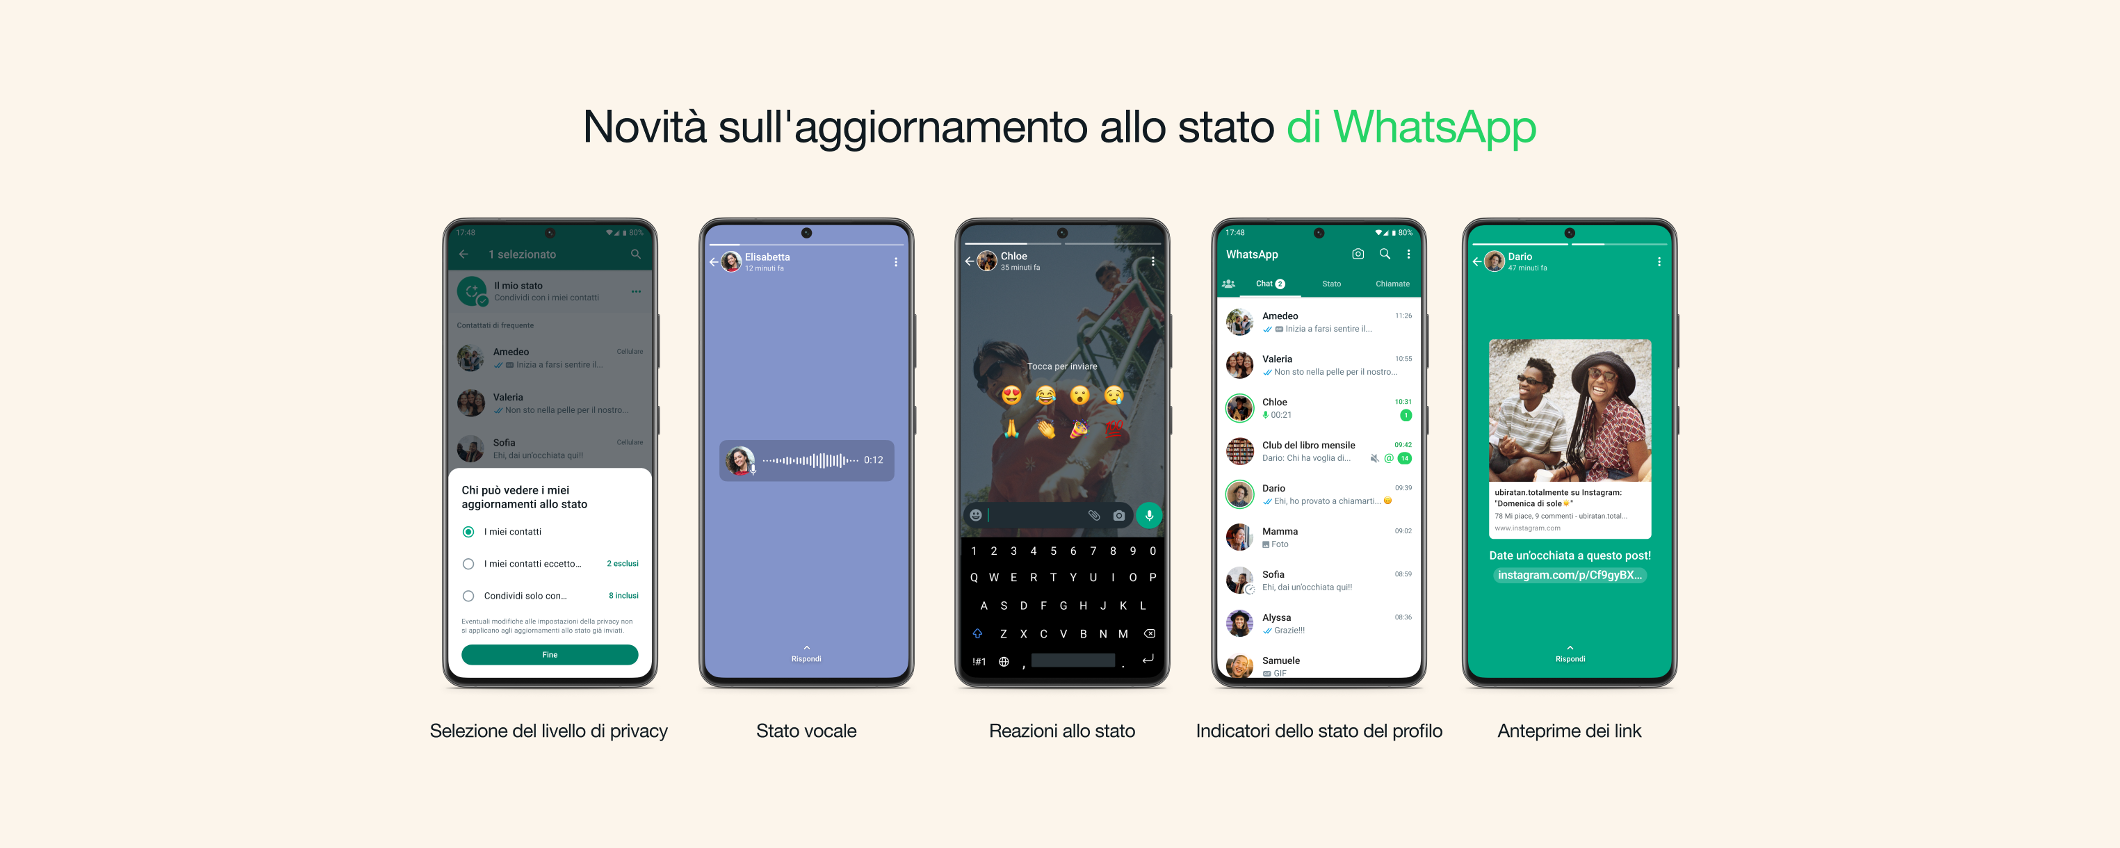 WhatsApp: 5 importanti novità per gli aggiornamenti di stato